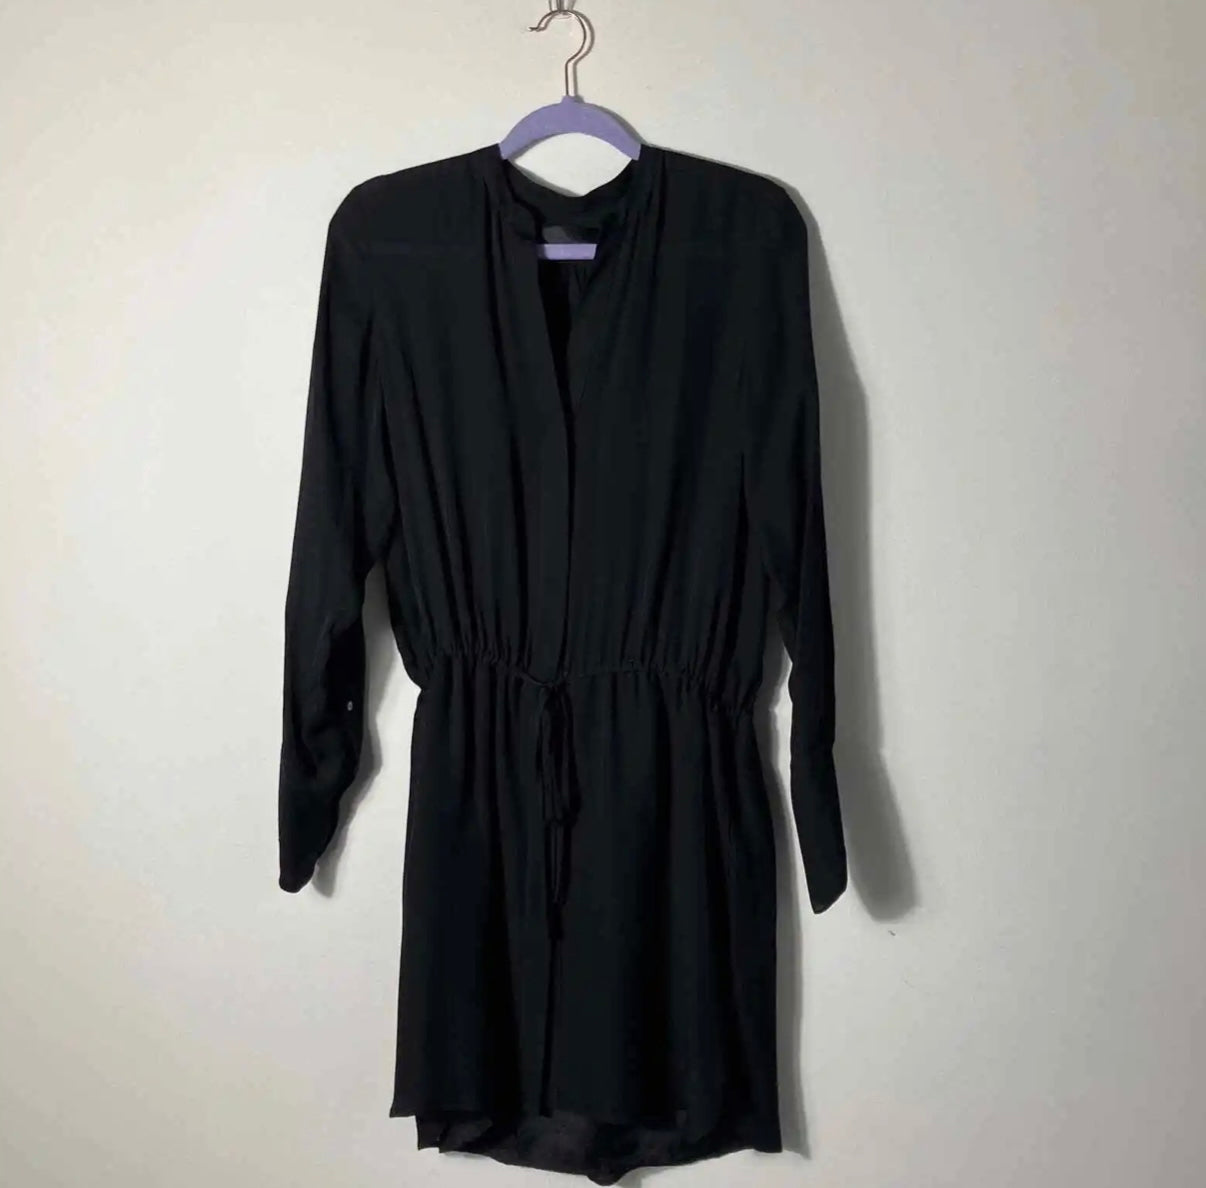 Nili Lotan - Black Silk Dress Long Sleeved Cinch Waist Short Lightweight